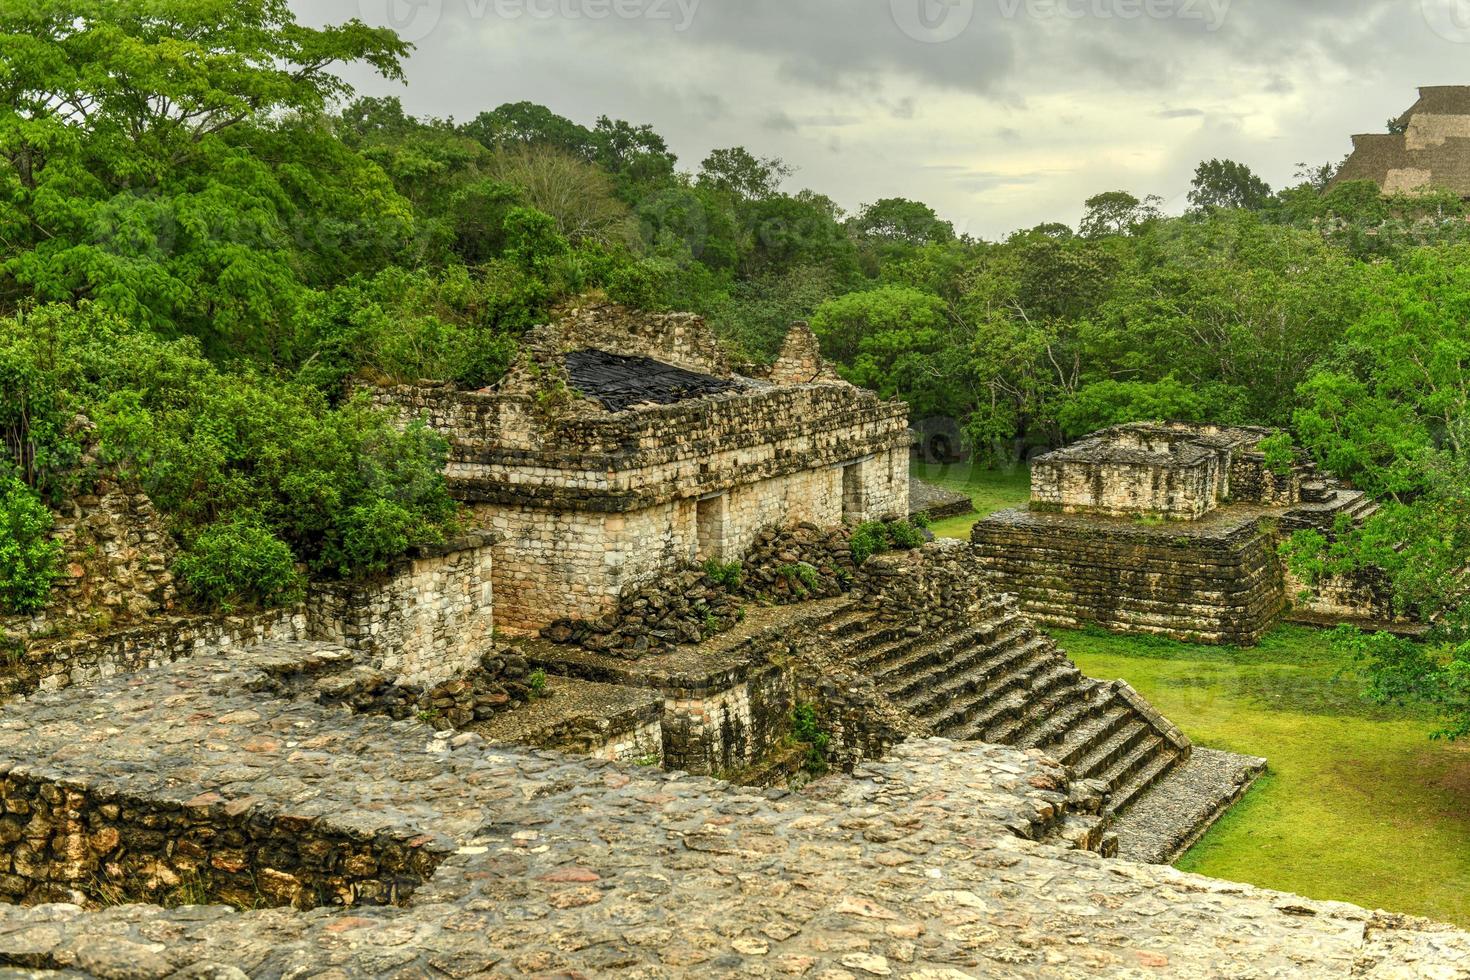 sitio arqueológico maya ek balam. ruinas mayas, península de yucatán, méxico foto